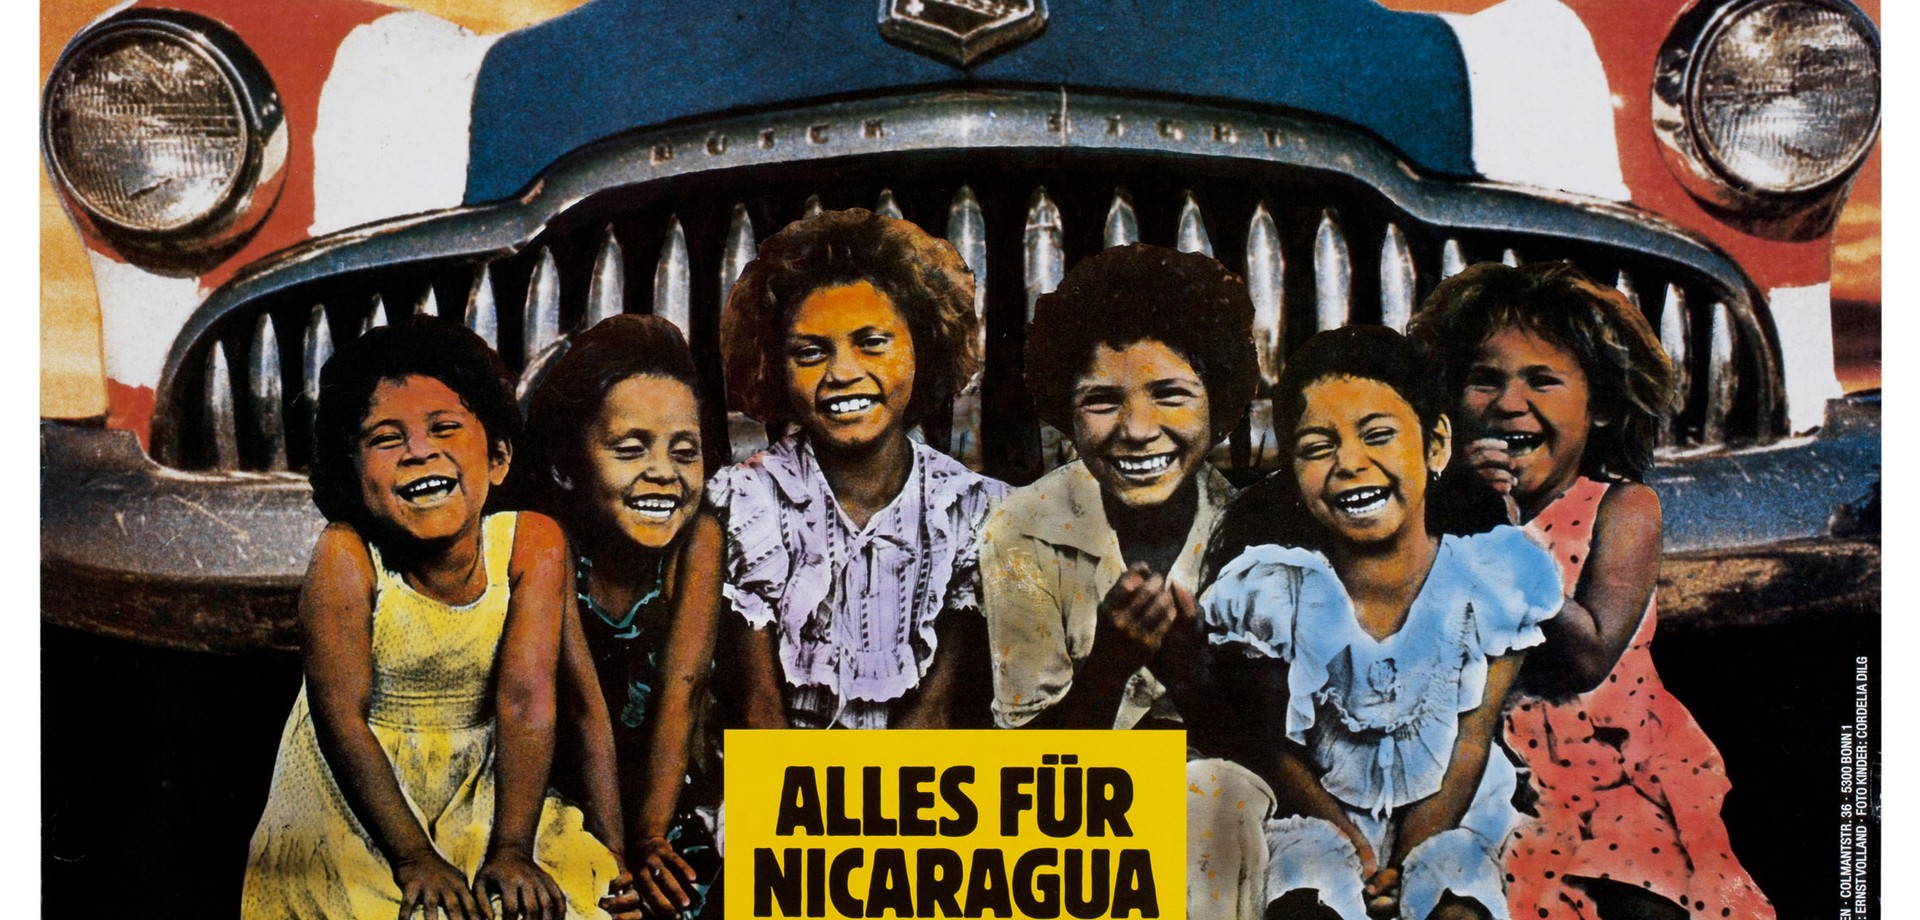 Plakat mit einem Auto in den Farben der US-Flagge im Hintergrund. Im Vordergrung sitzen 6 Mädchen. In Großbuchstaben steht "Alles für Nicaragua"